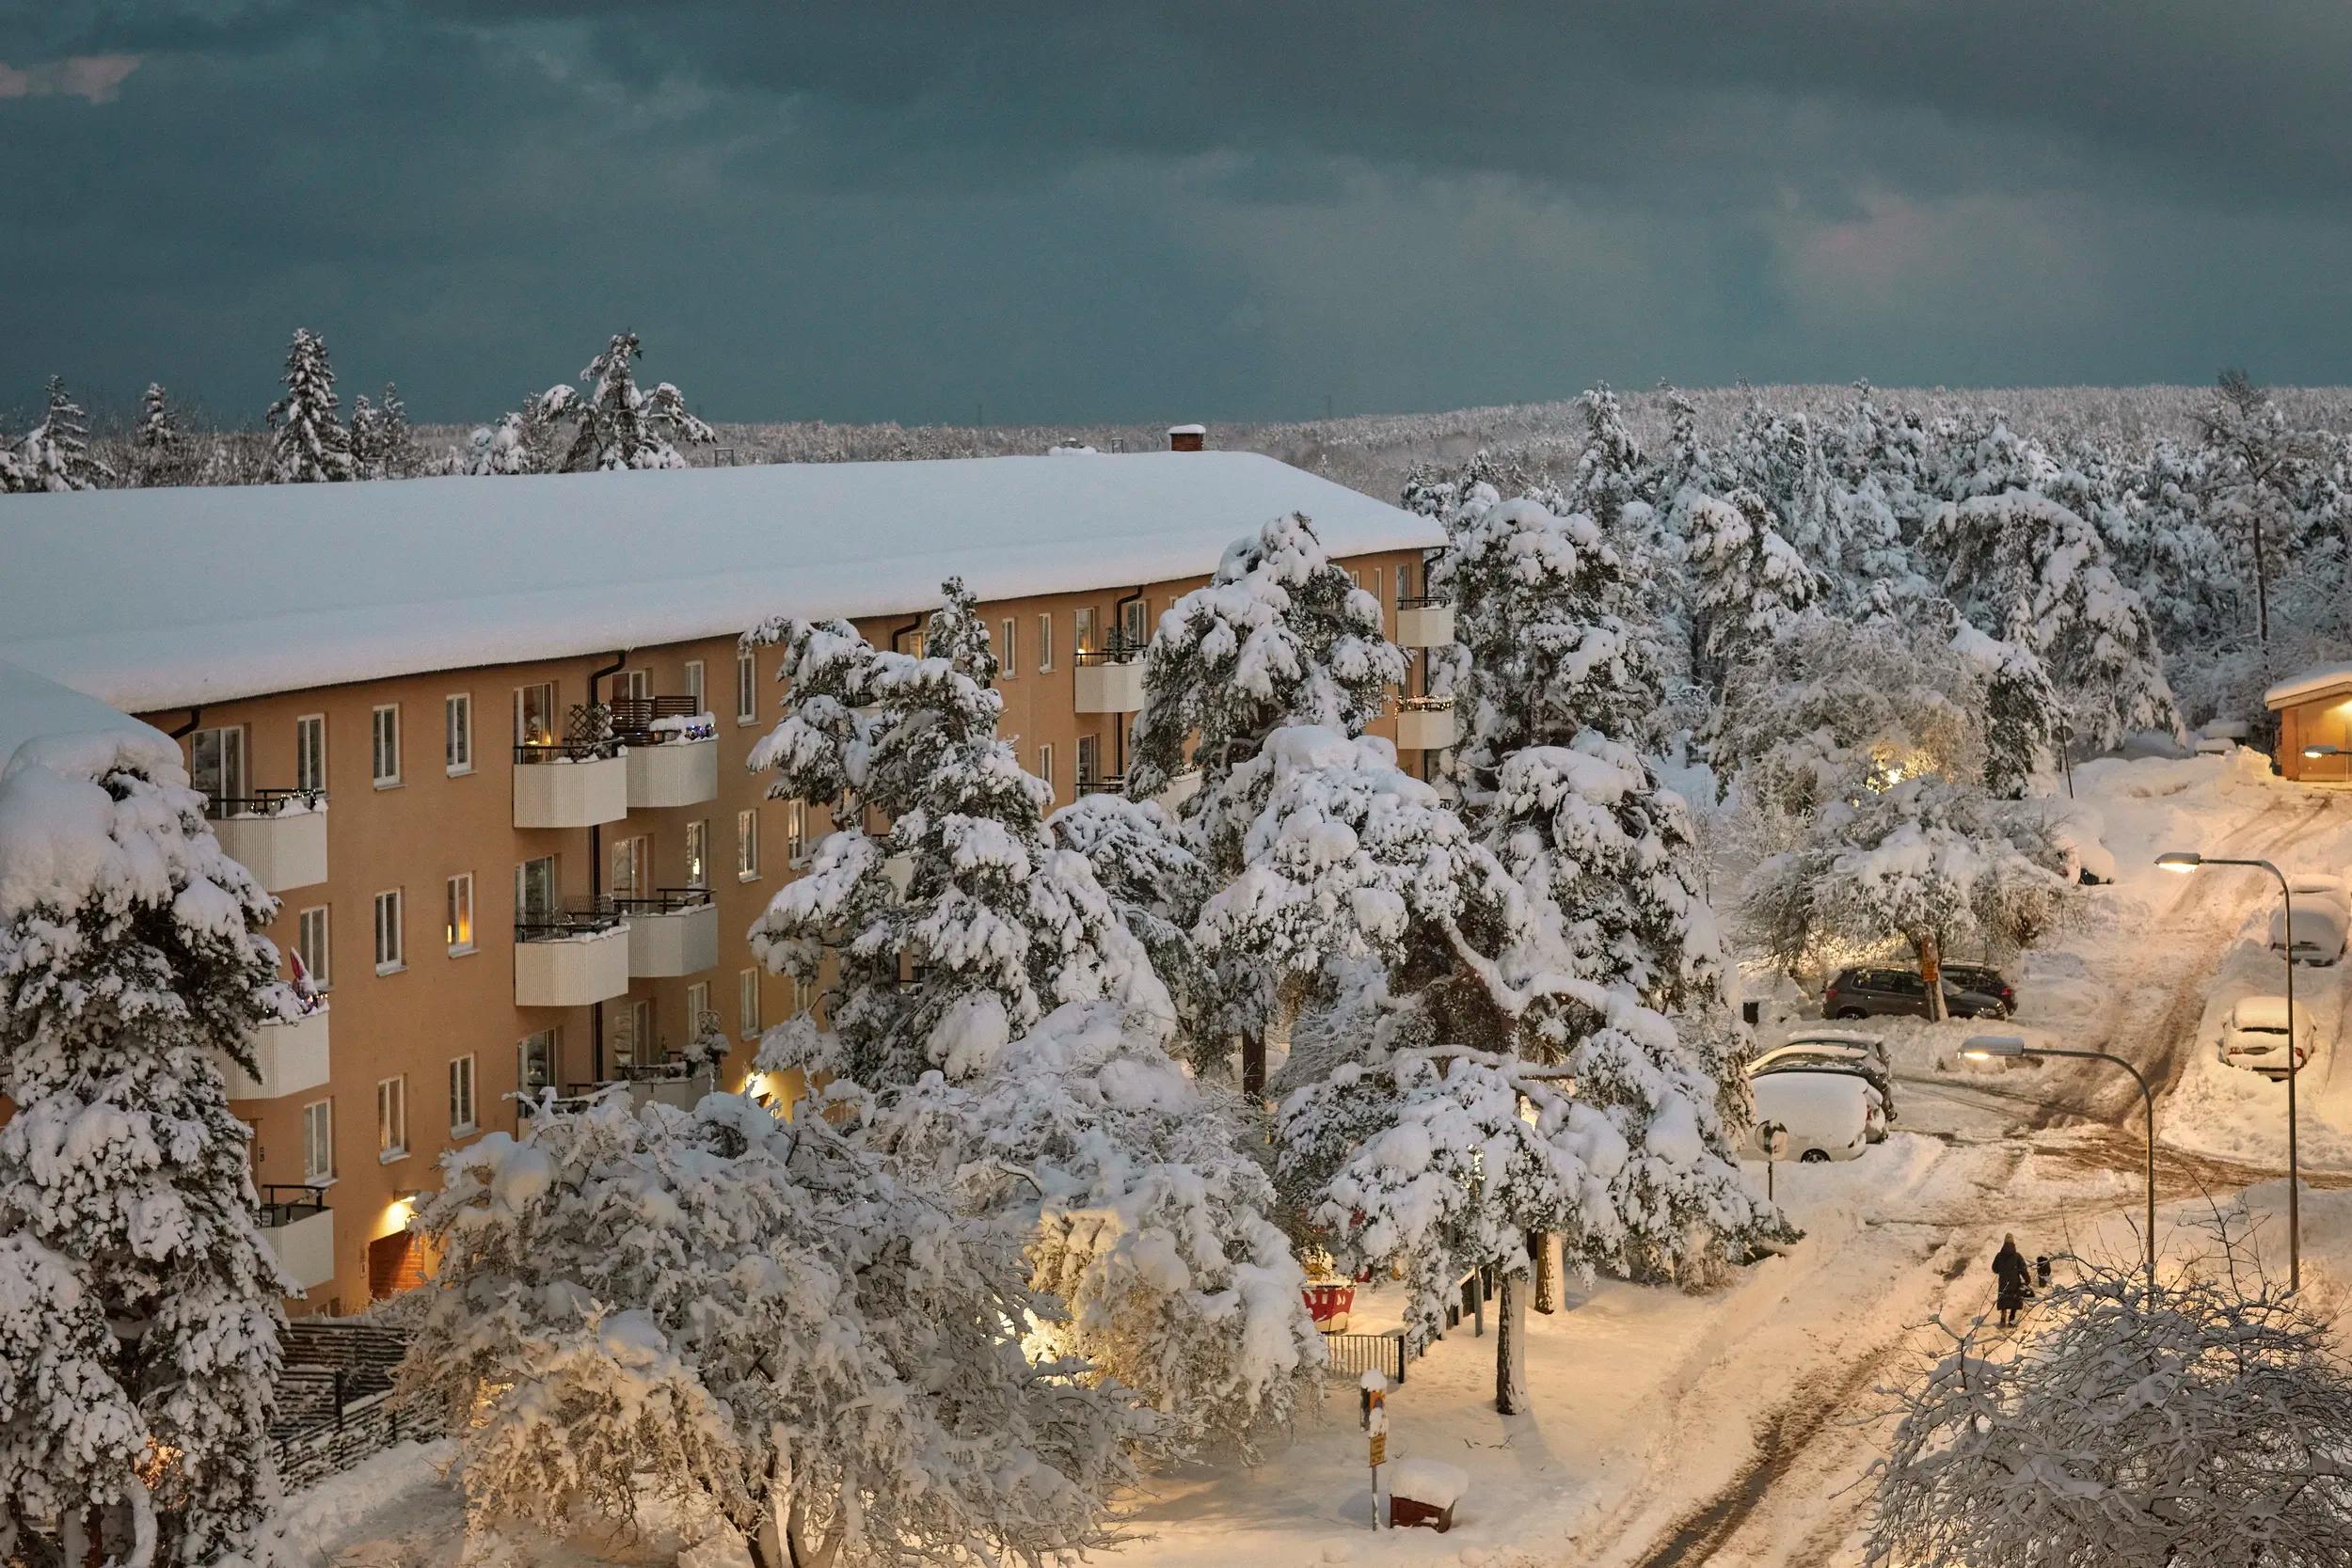 Vinterlandskap med täckt snö och lägenhetsbyggnader - representerar Offerta.se's snöröjnings- och isborttagningstjänst för effektiv och pålitlig hantering av vinterväde